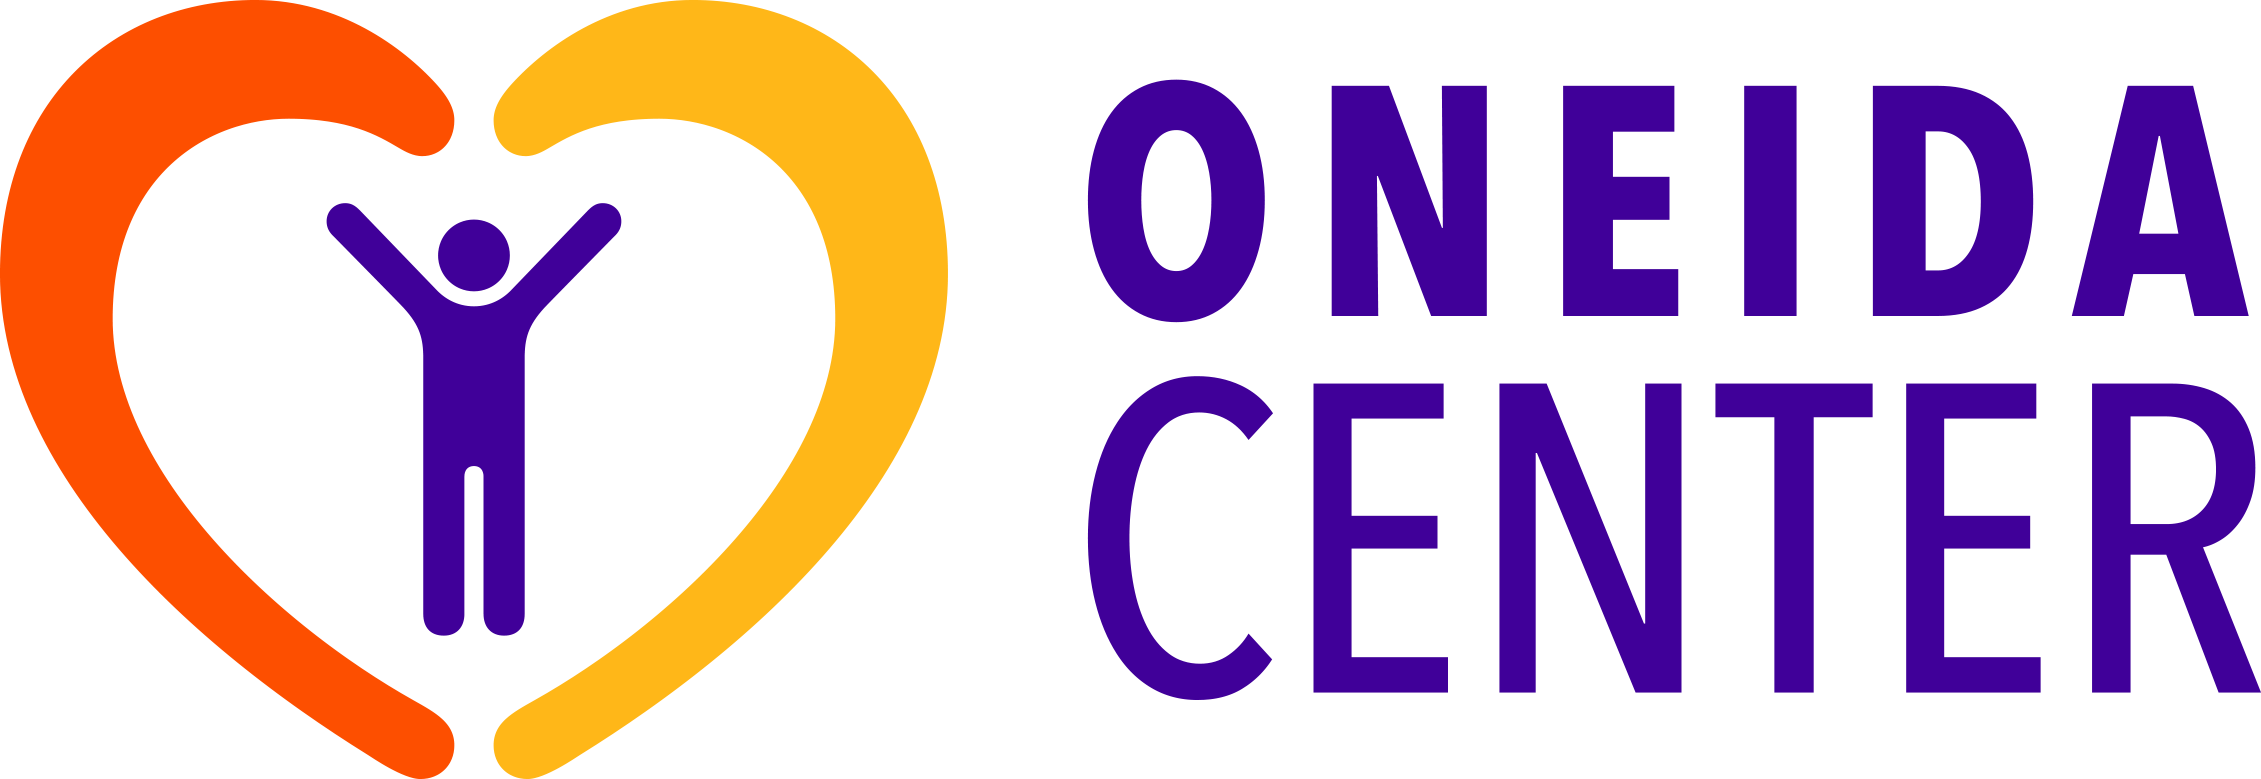 Oneida Center logo